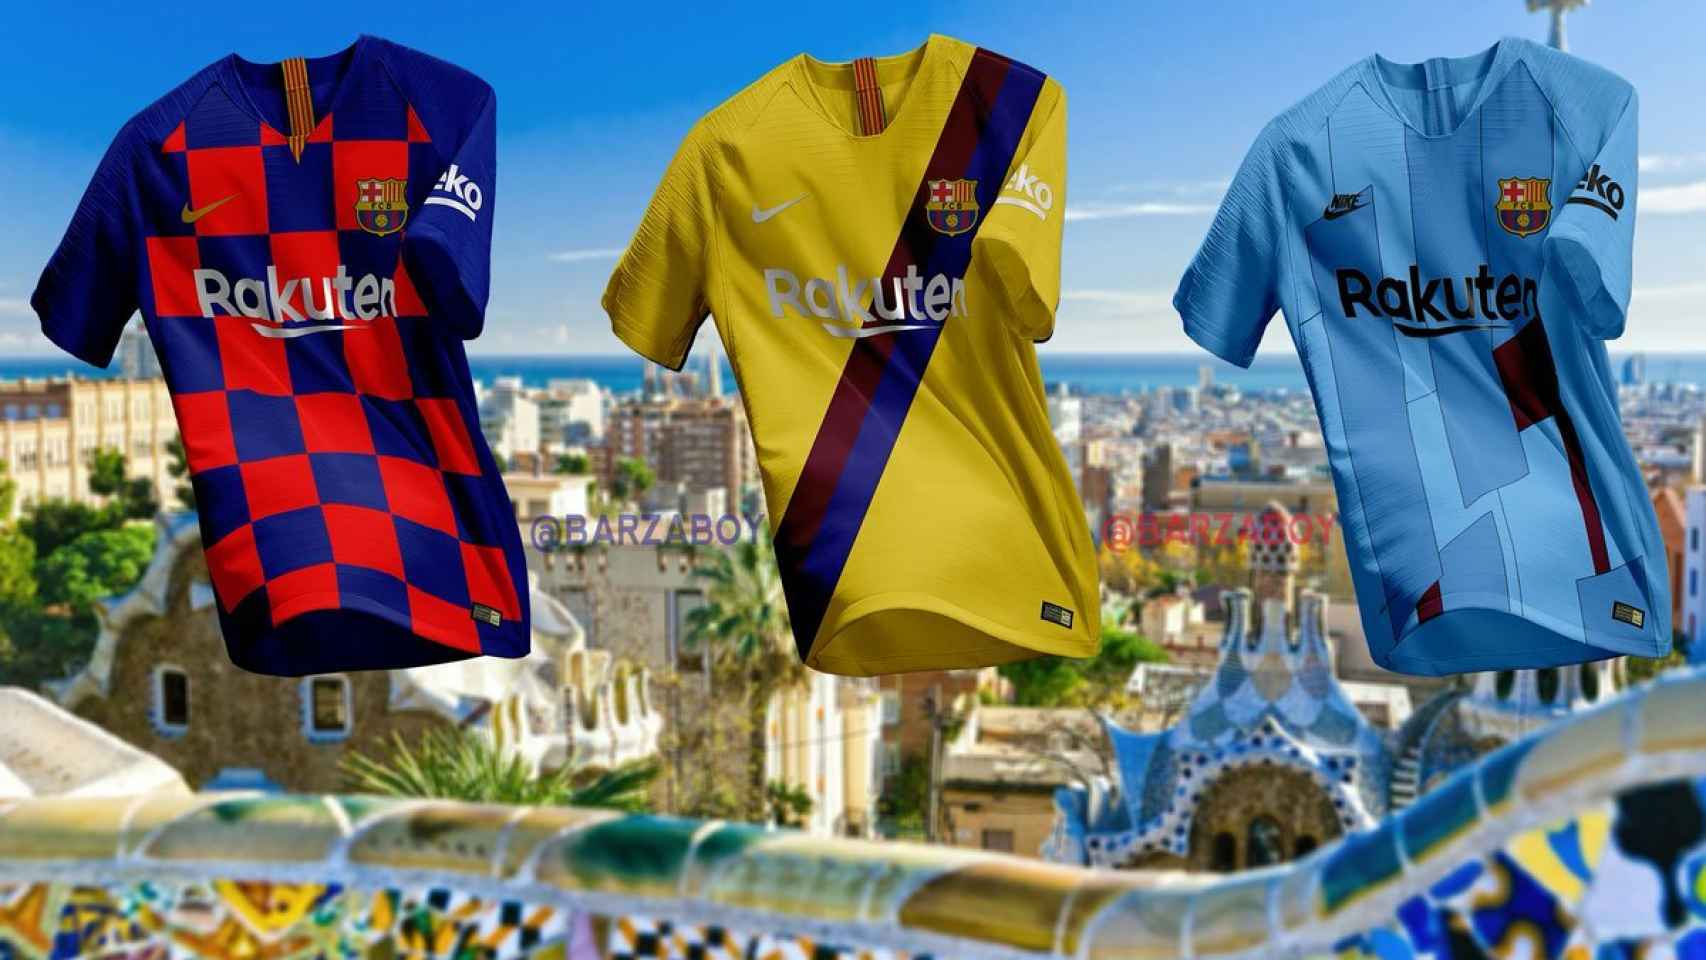 Las nuevas equipaciones del FC Barcelona. Foto: Twitter (Barzaboy)